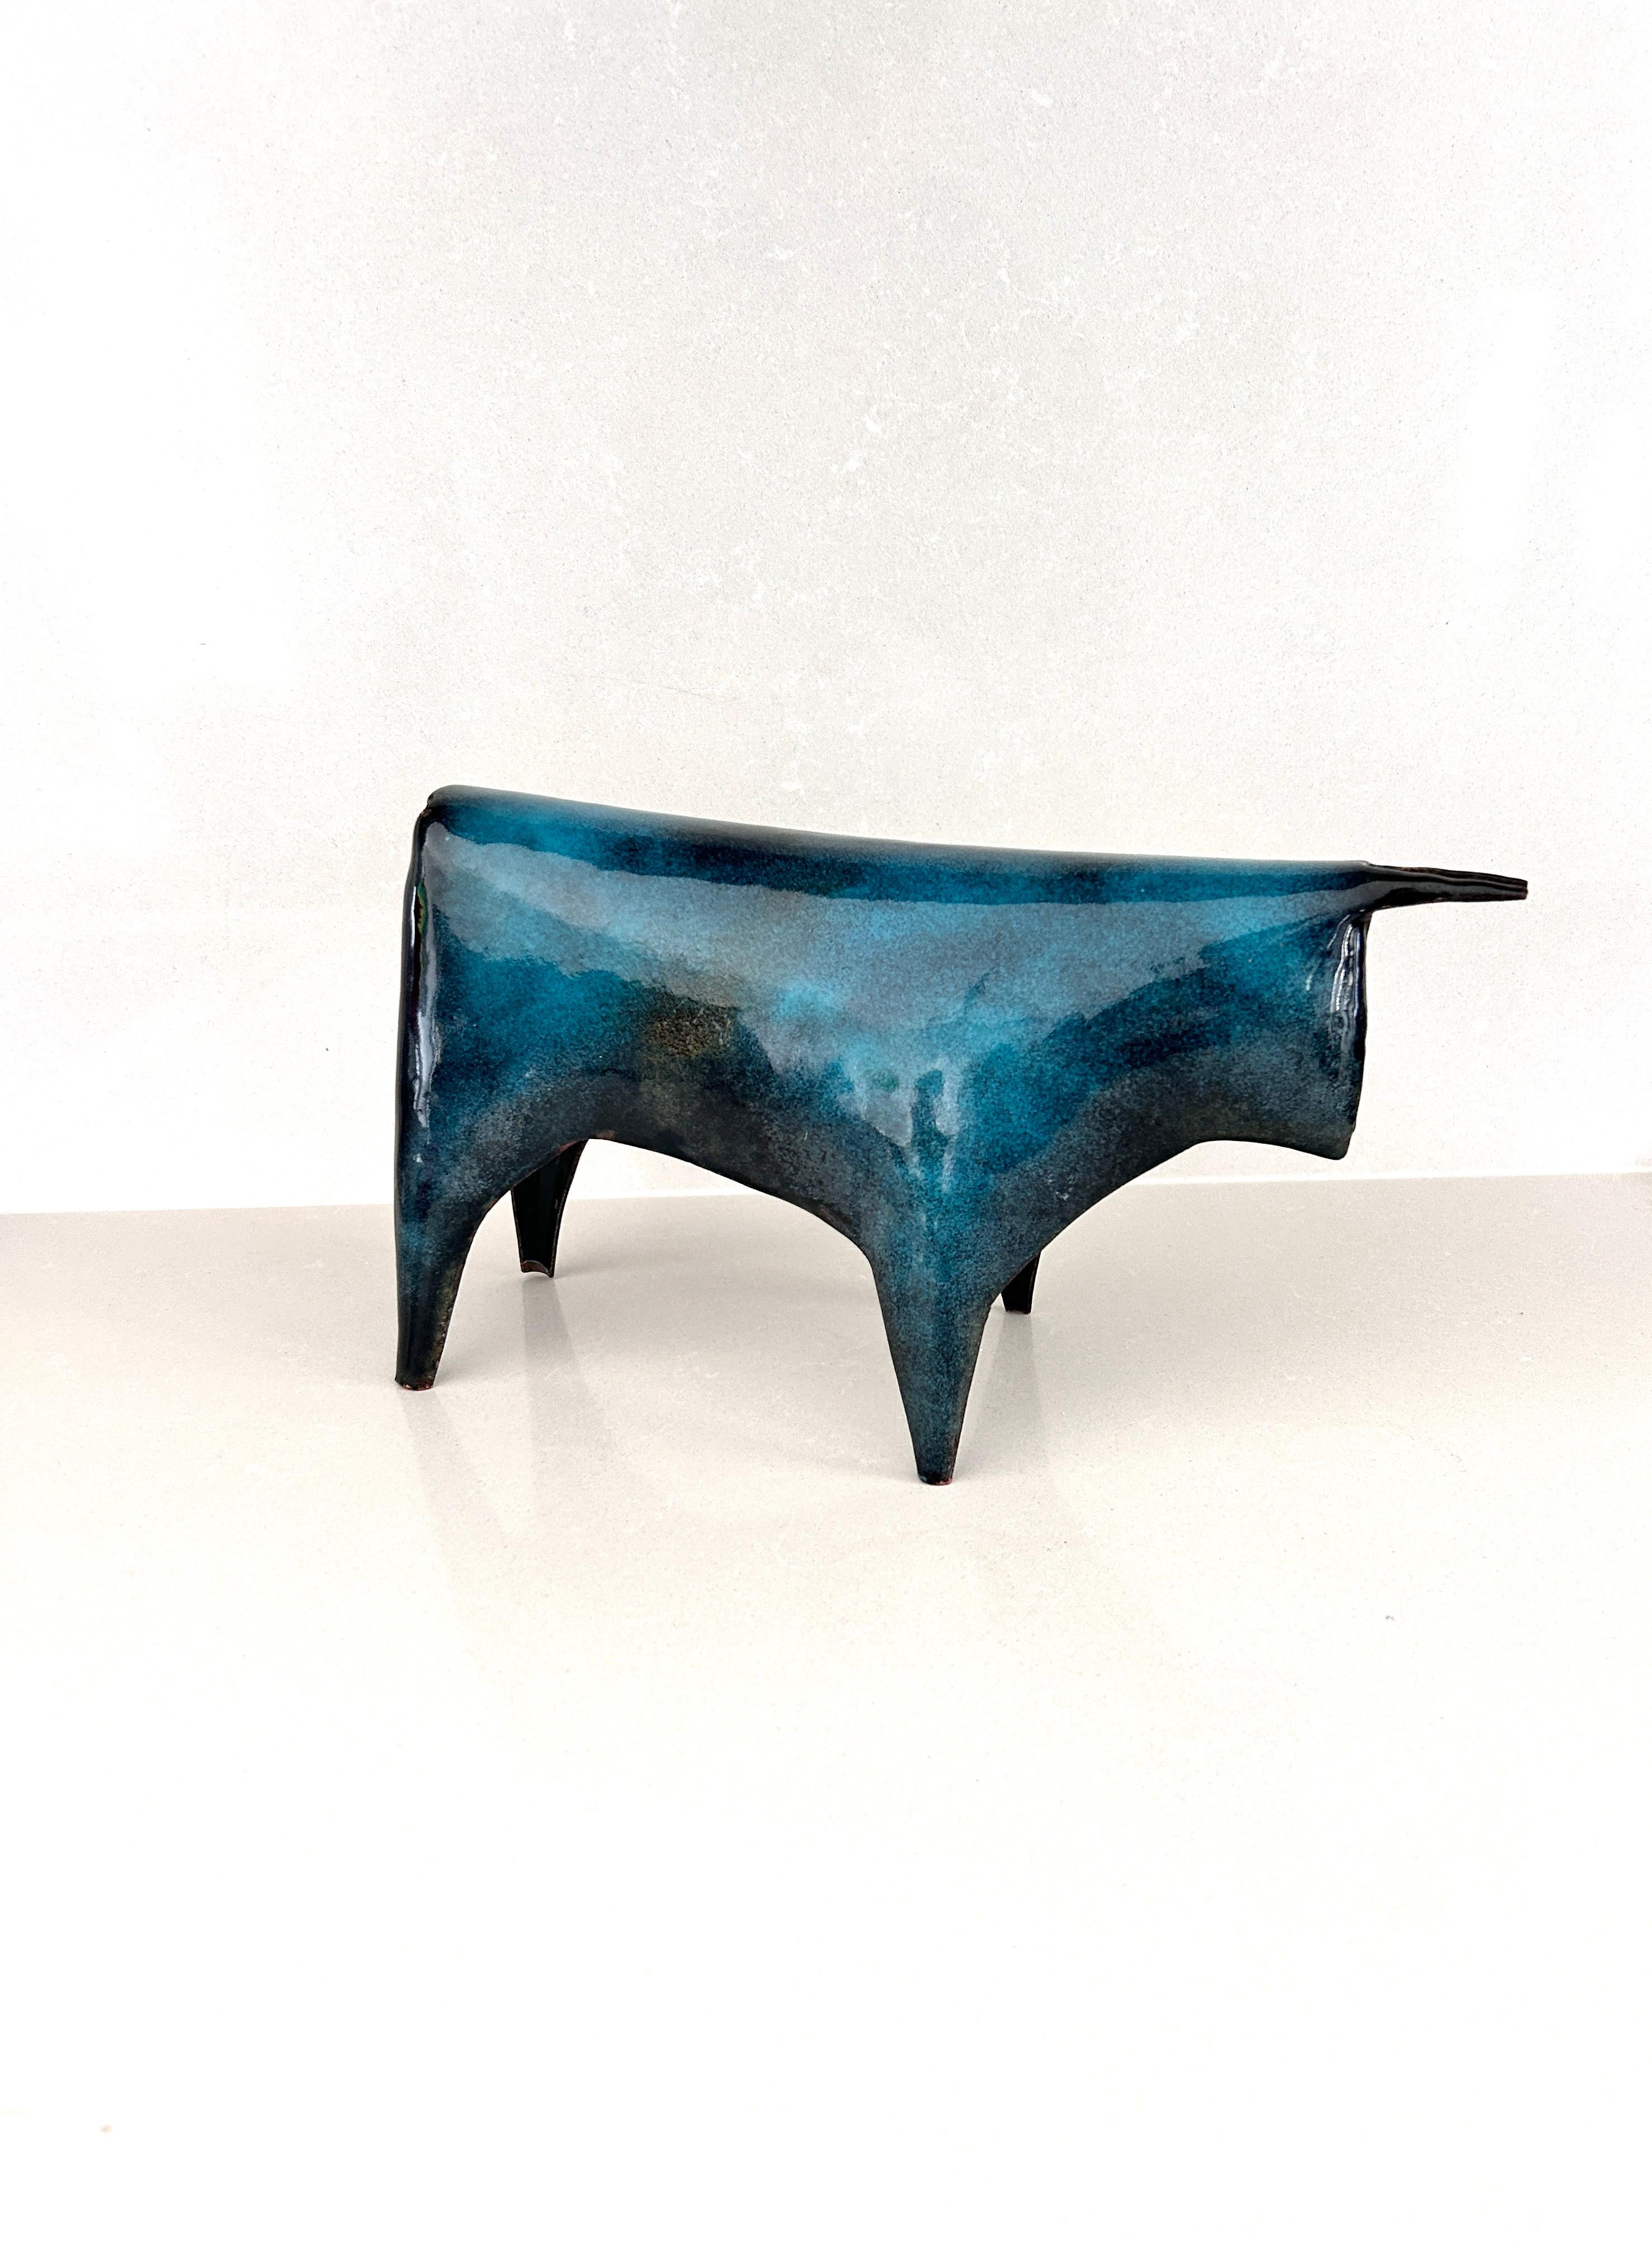 Sculpture rare et précieuse réalisée par Gio Ponti pour De Poli dans les années 1950
La sculpture, réalisée en cuivre émaillé dans des tons bleus, représente un taureau
C'est une invention, ces figures d'animaux - chats, poissons, chevaux - et même